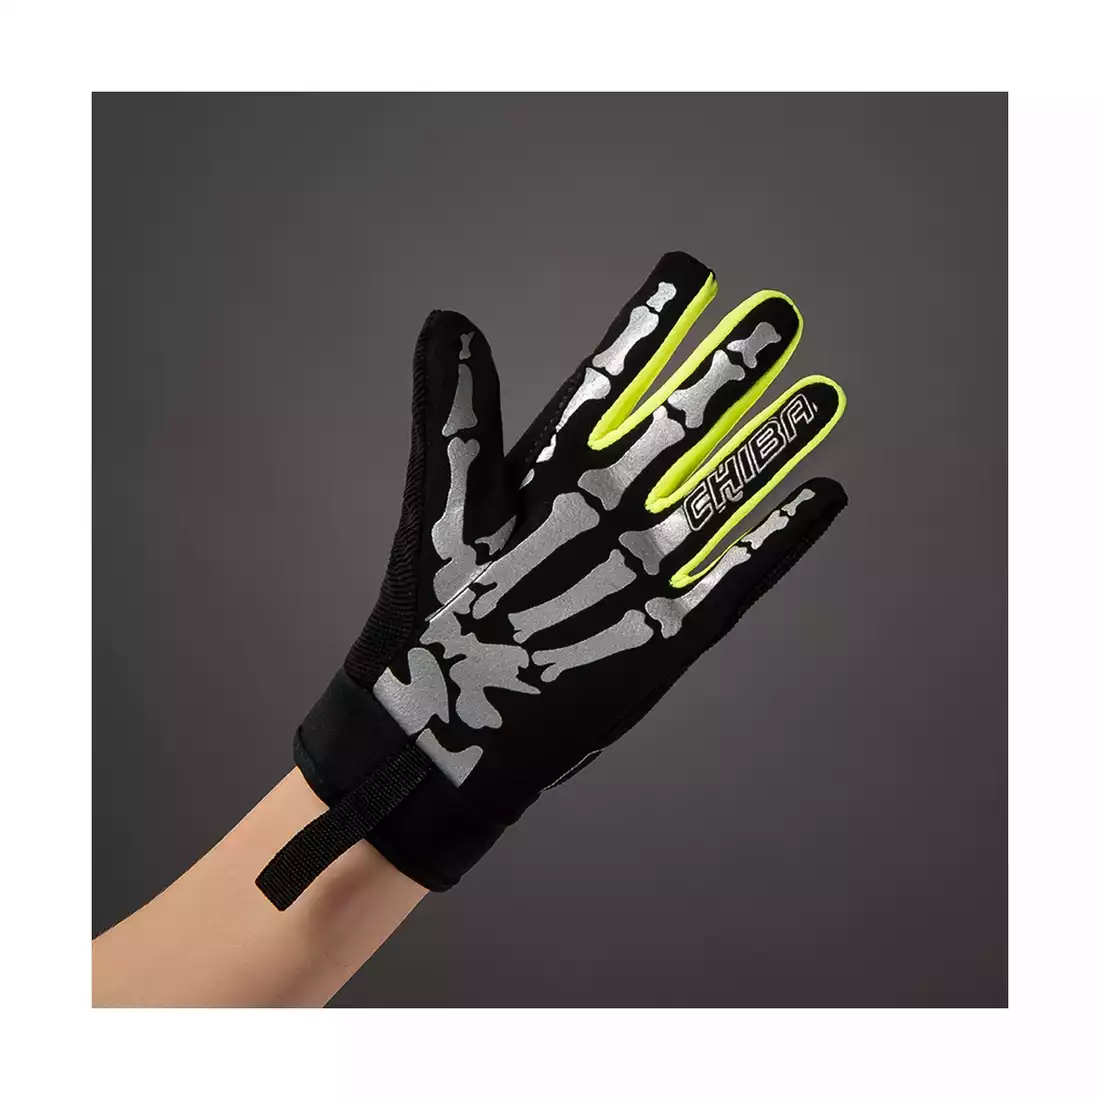 Chiba Kinder Handschuh BONES 30576 schwarz gelb 